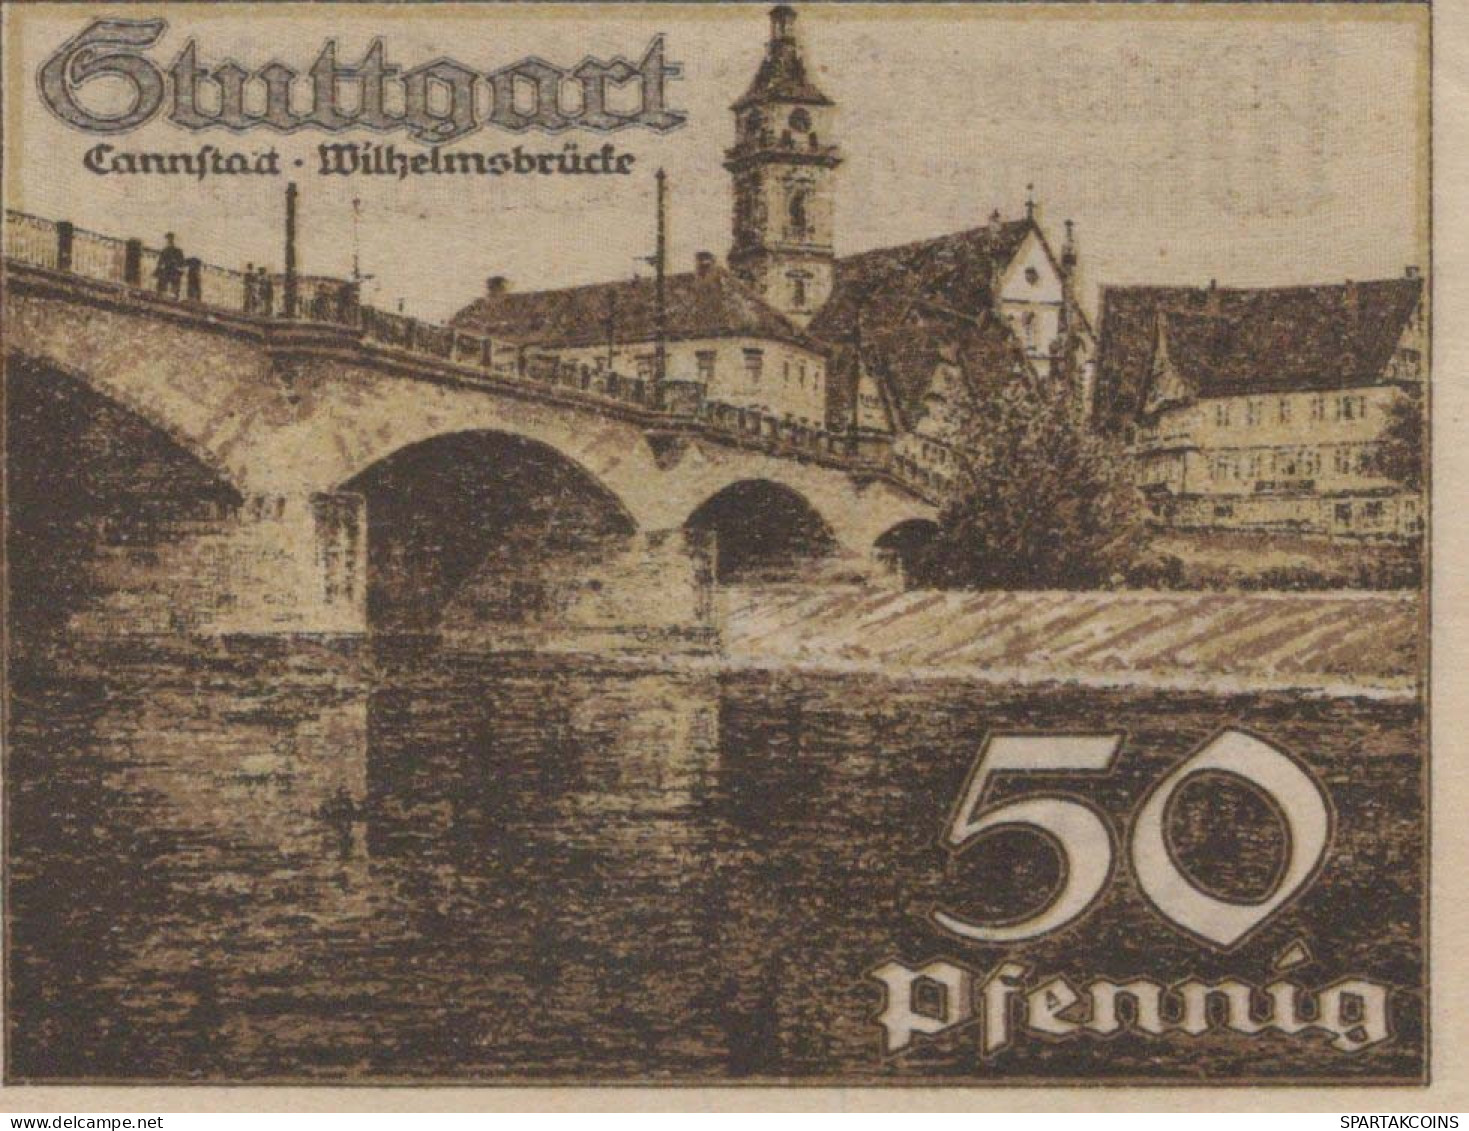 50 PFENNIG 1921 Stadt STUTTGART Württemberg UNC DEUTSCHLAND Notgeld #PC443 - [11] Local Banknote Issues